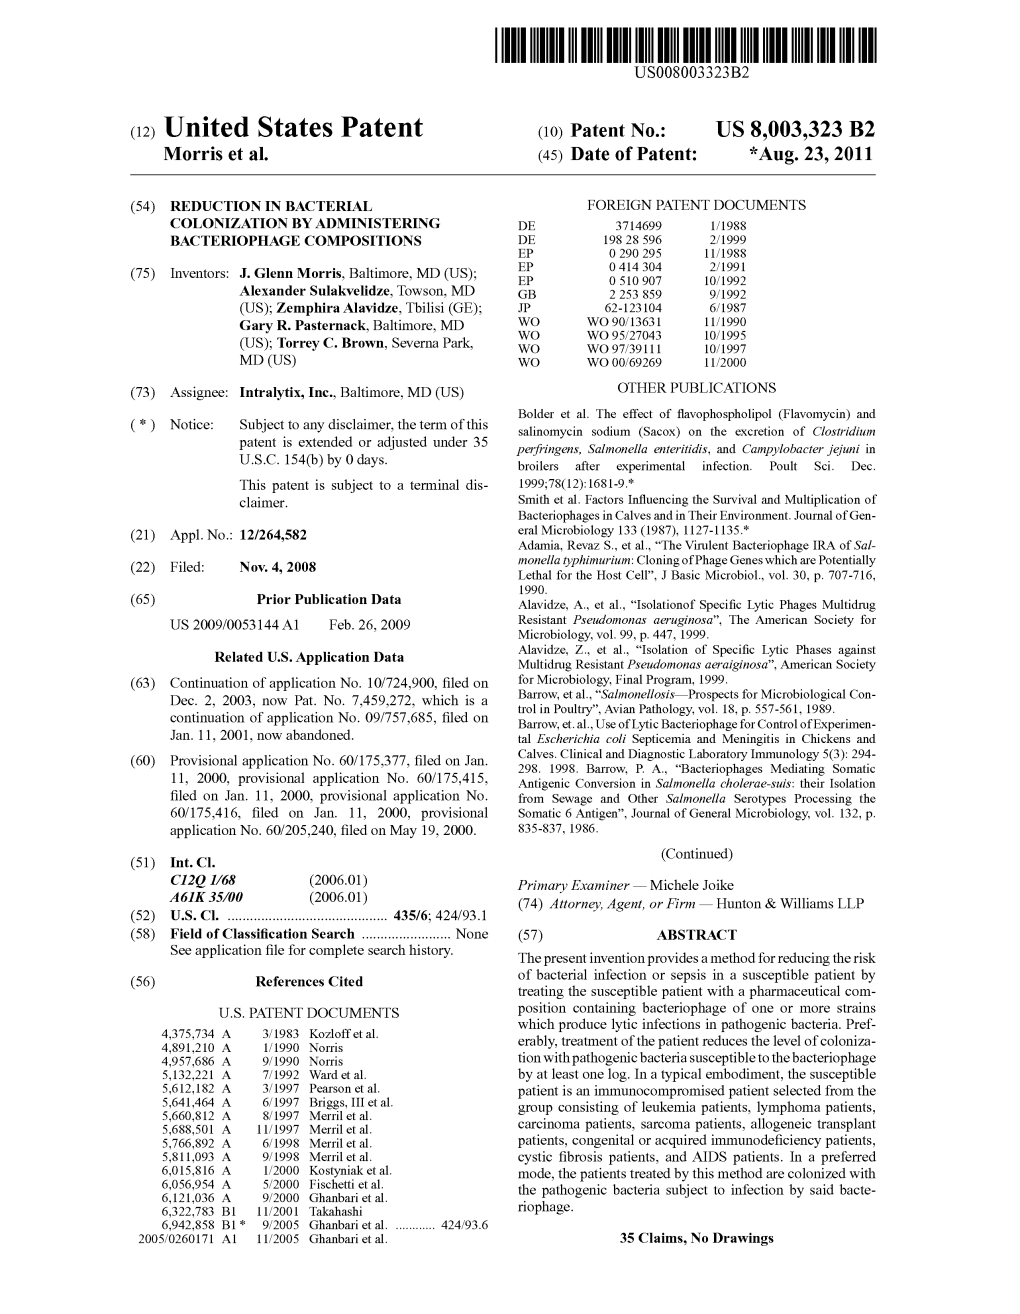 (12) United States Patent (10) Patent No.: US 8,003,323 B2 Morris Et Al